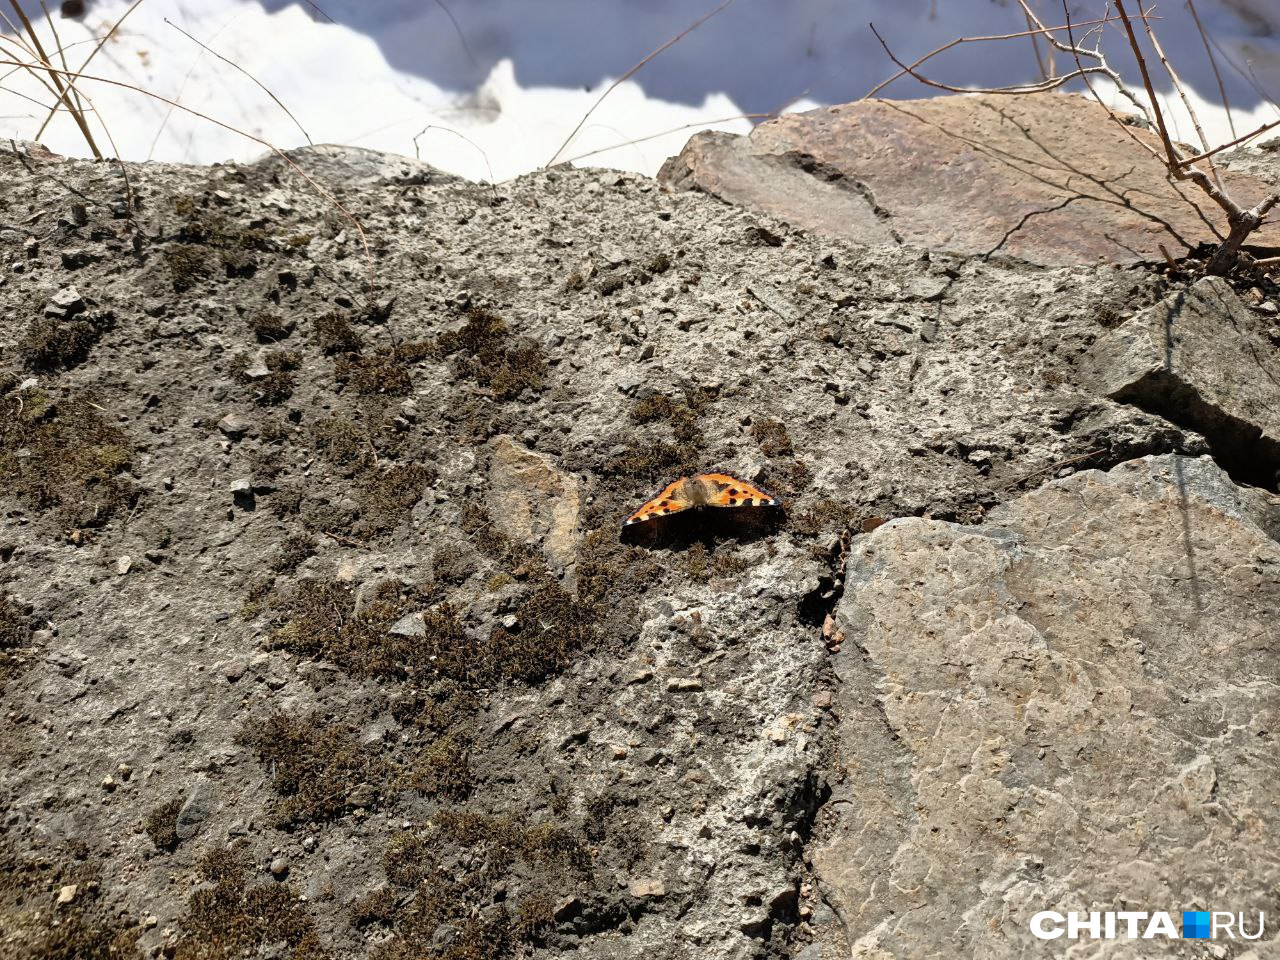 Бабочку-крапивницу обнаружили прохожие на улице в центре Читы